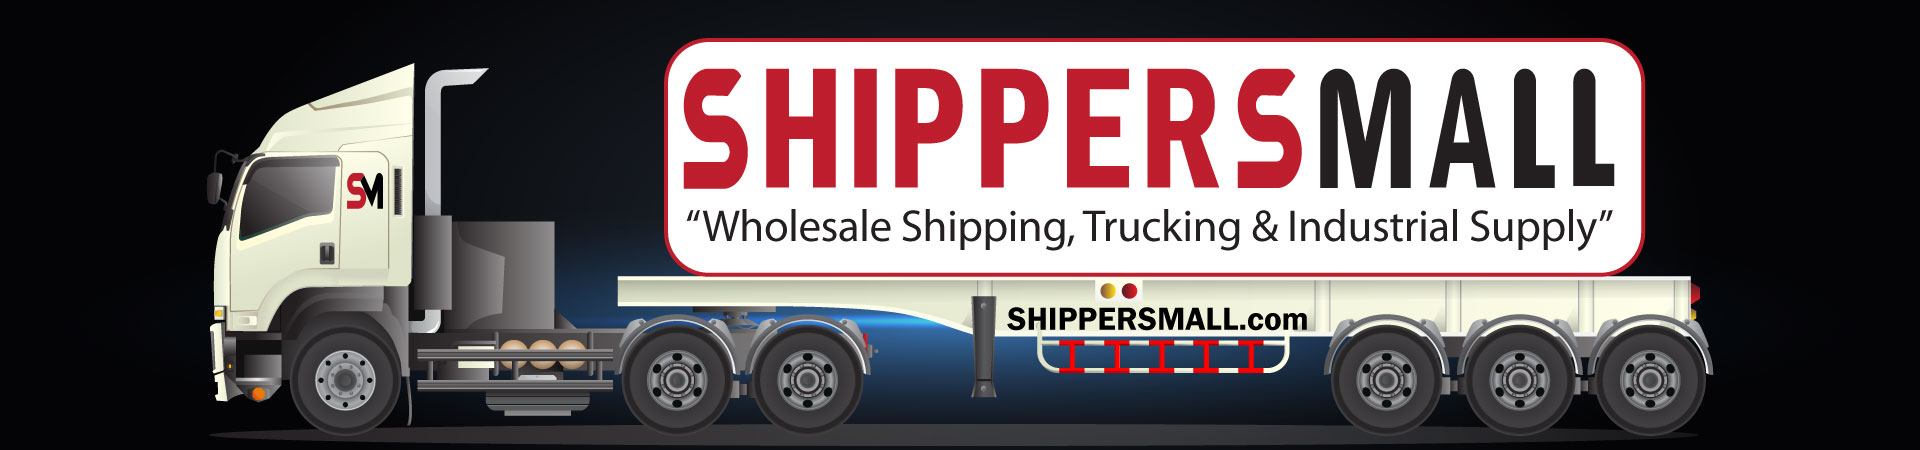 www.shippersmall.com